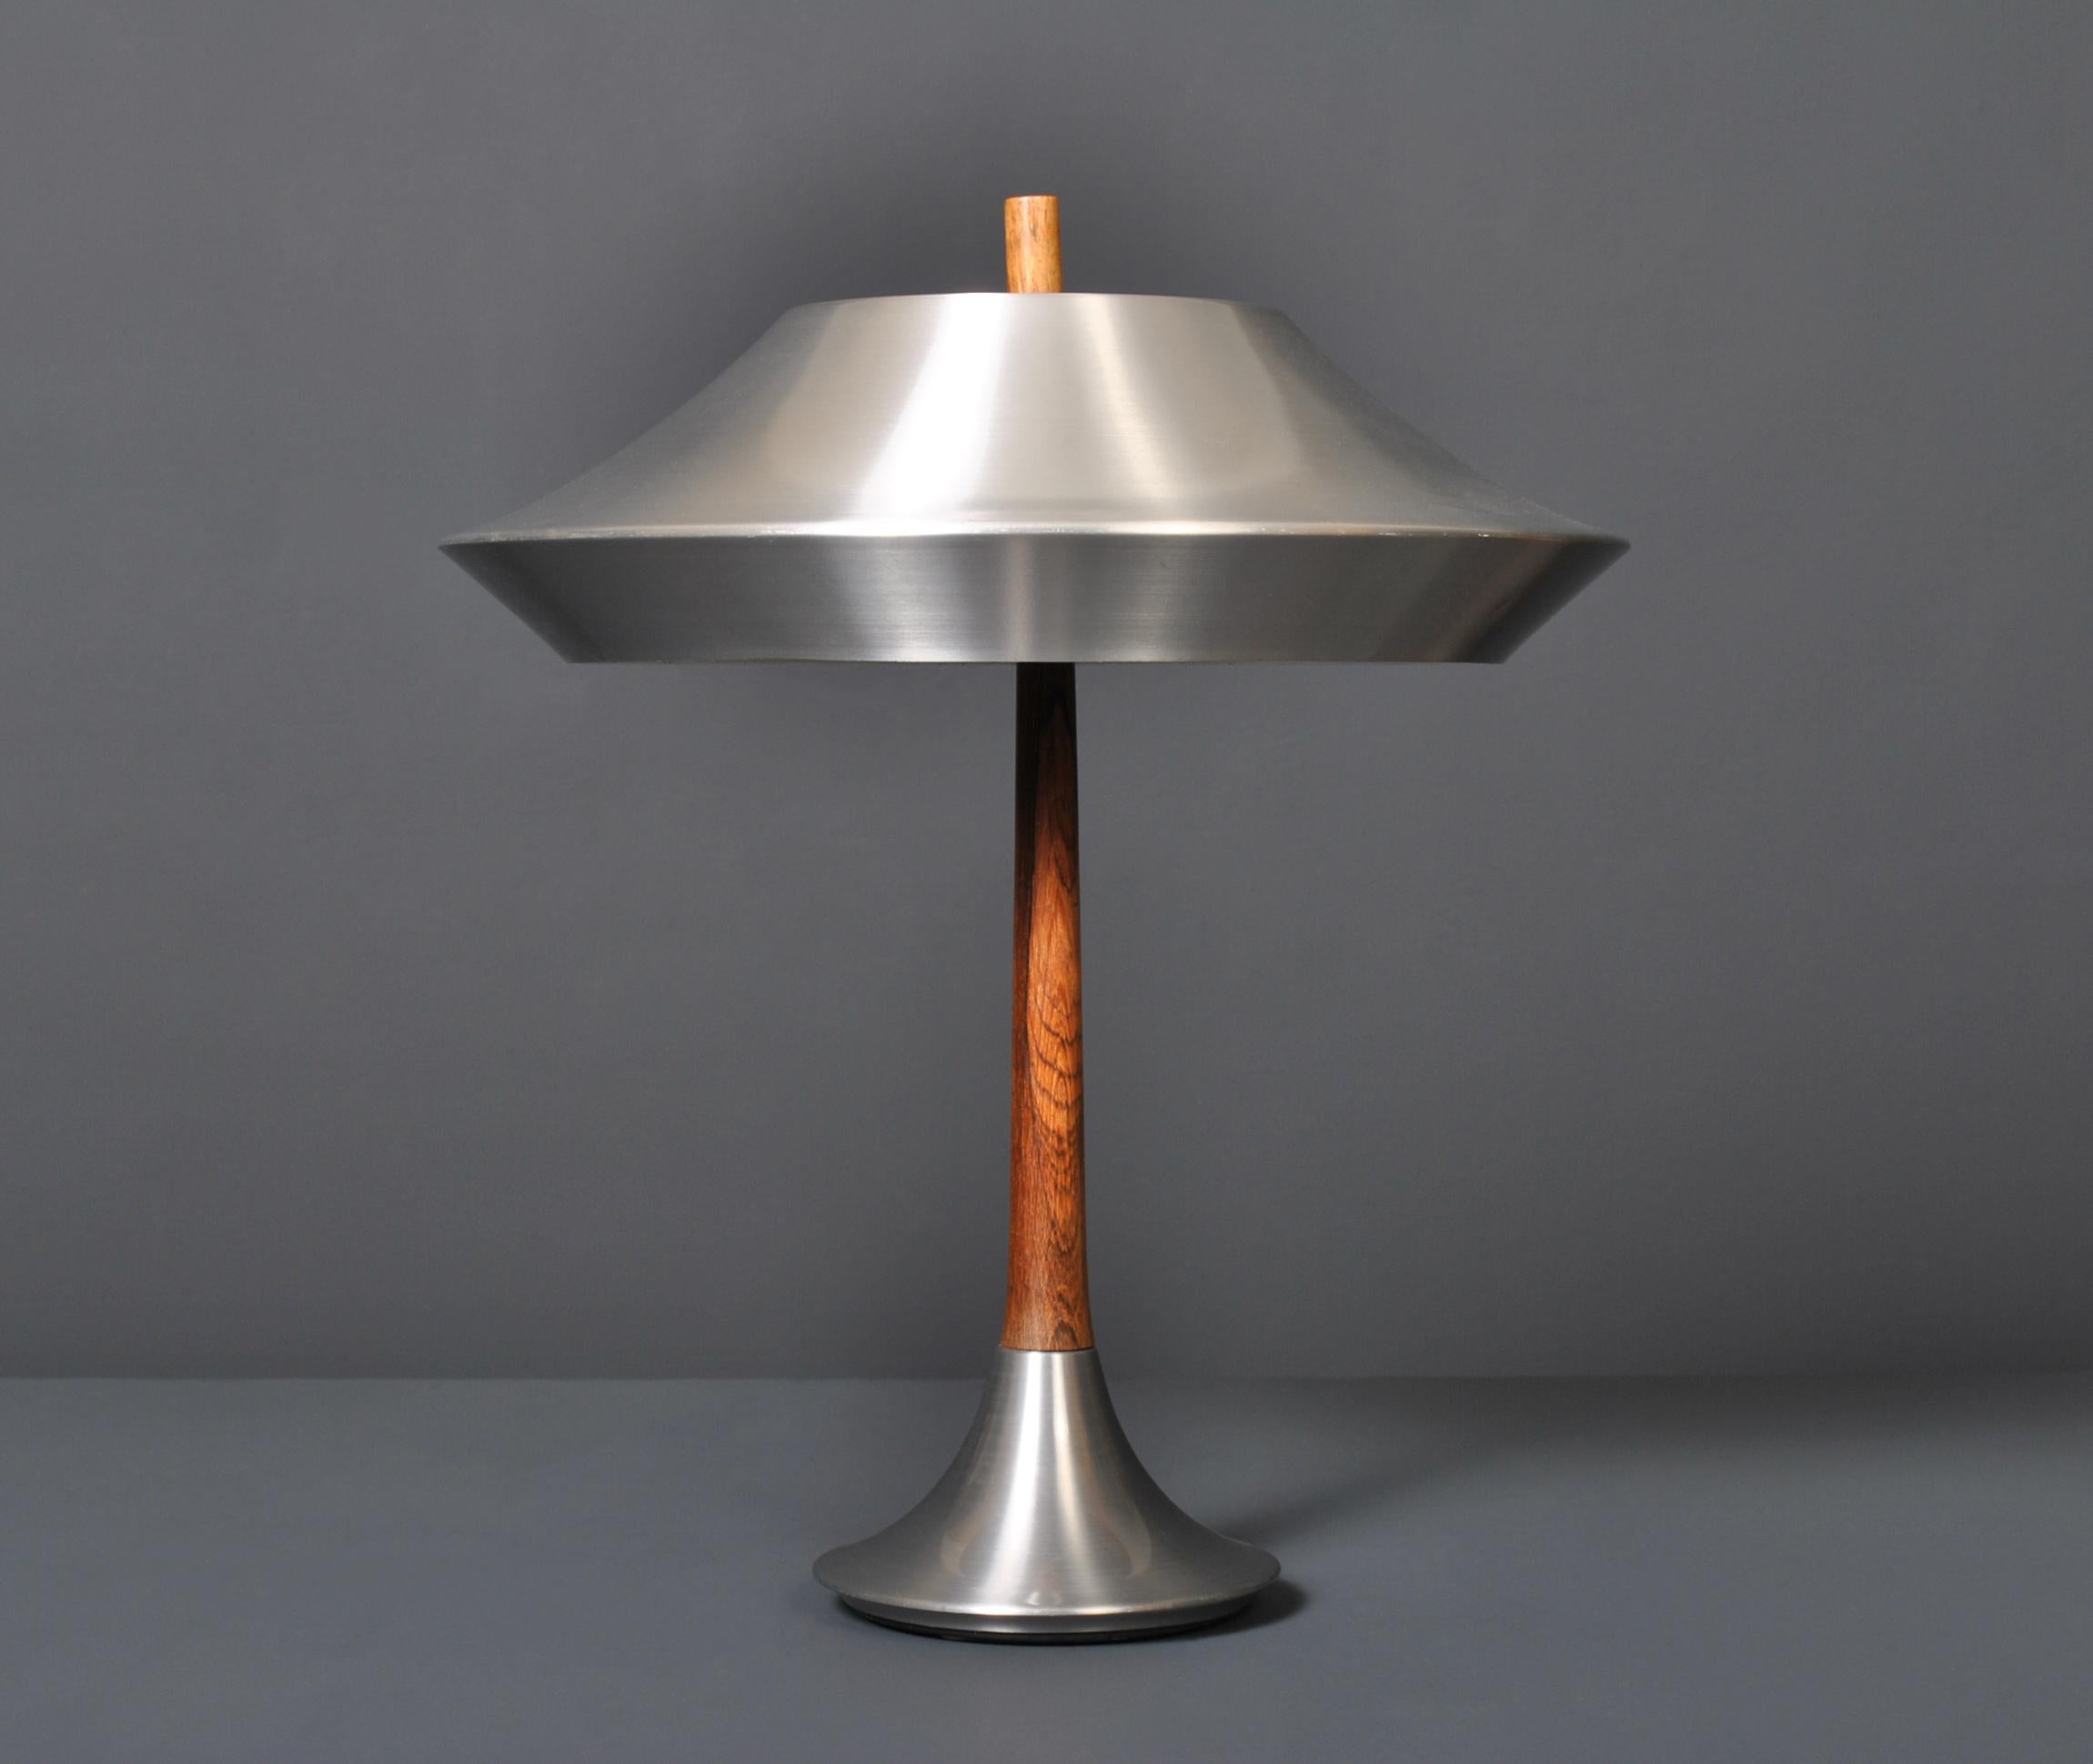 Danish Midcentury Modern Lamp 1